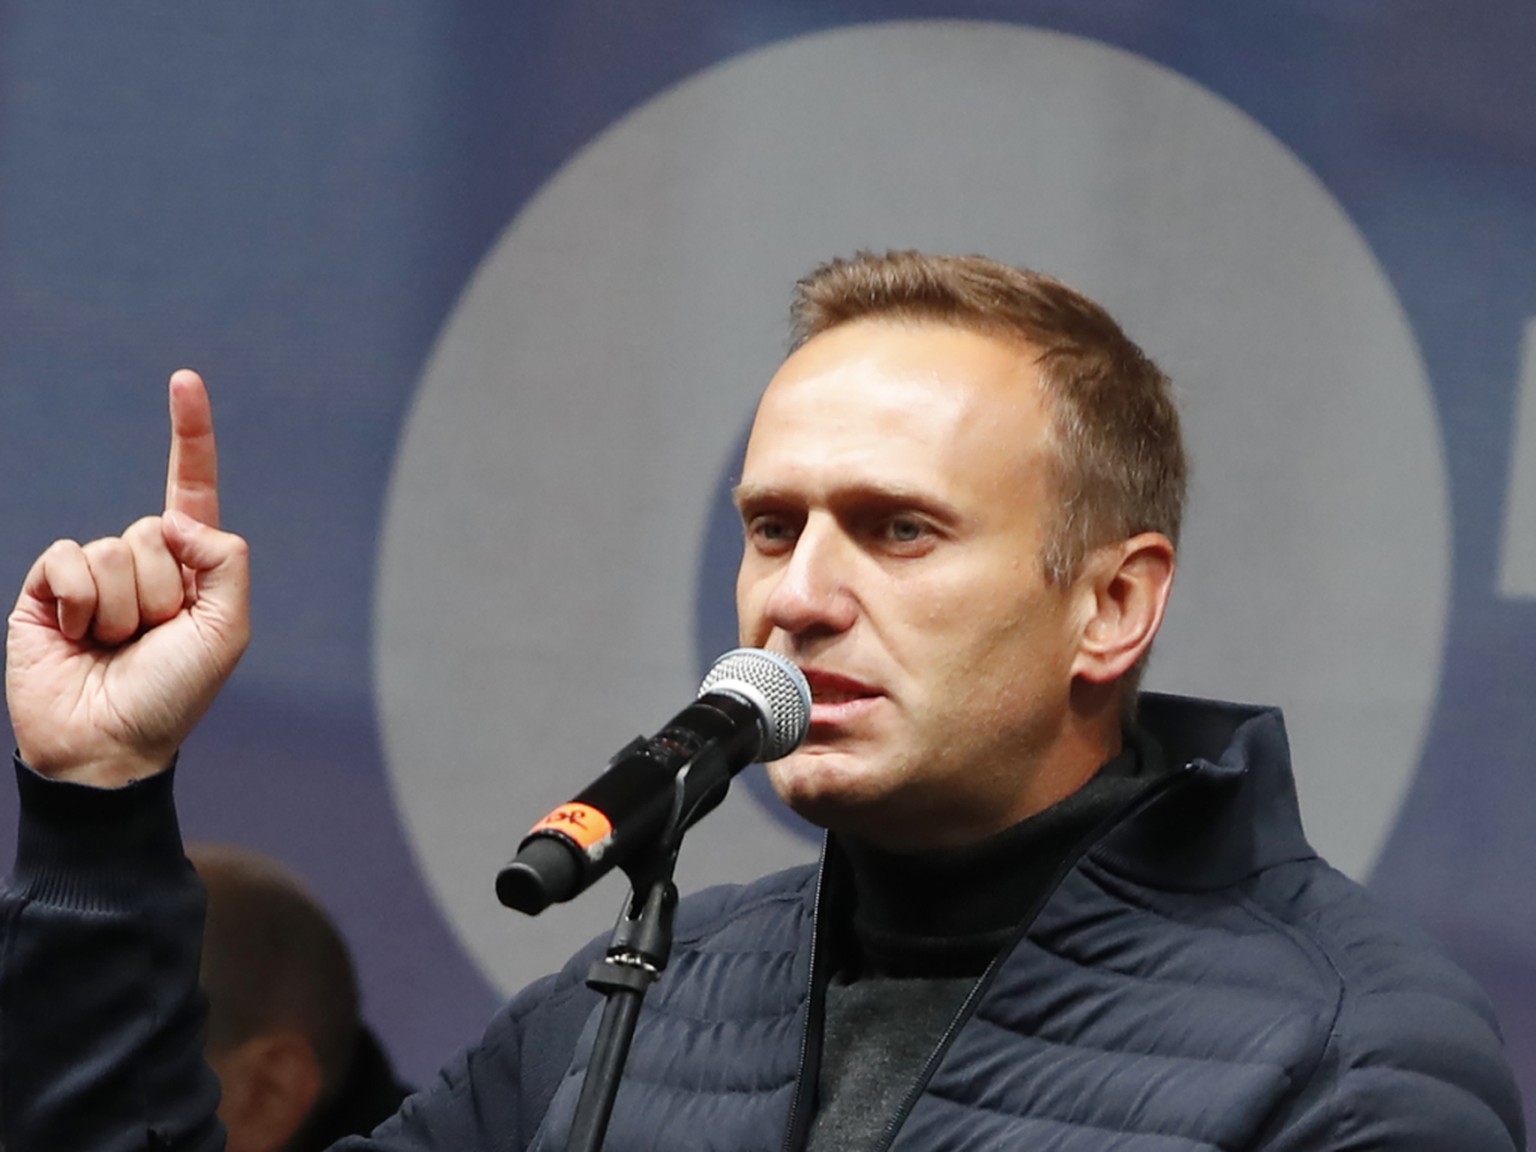 Der russische Oppositionelle Alexei Nawalny erhebt heftige Vorw